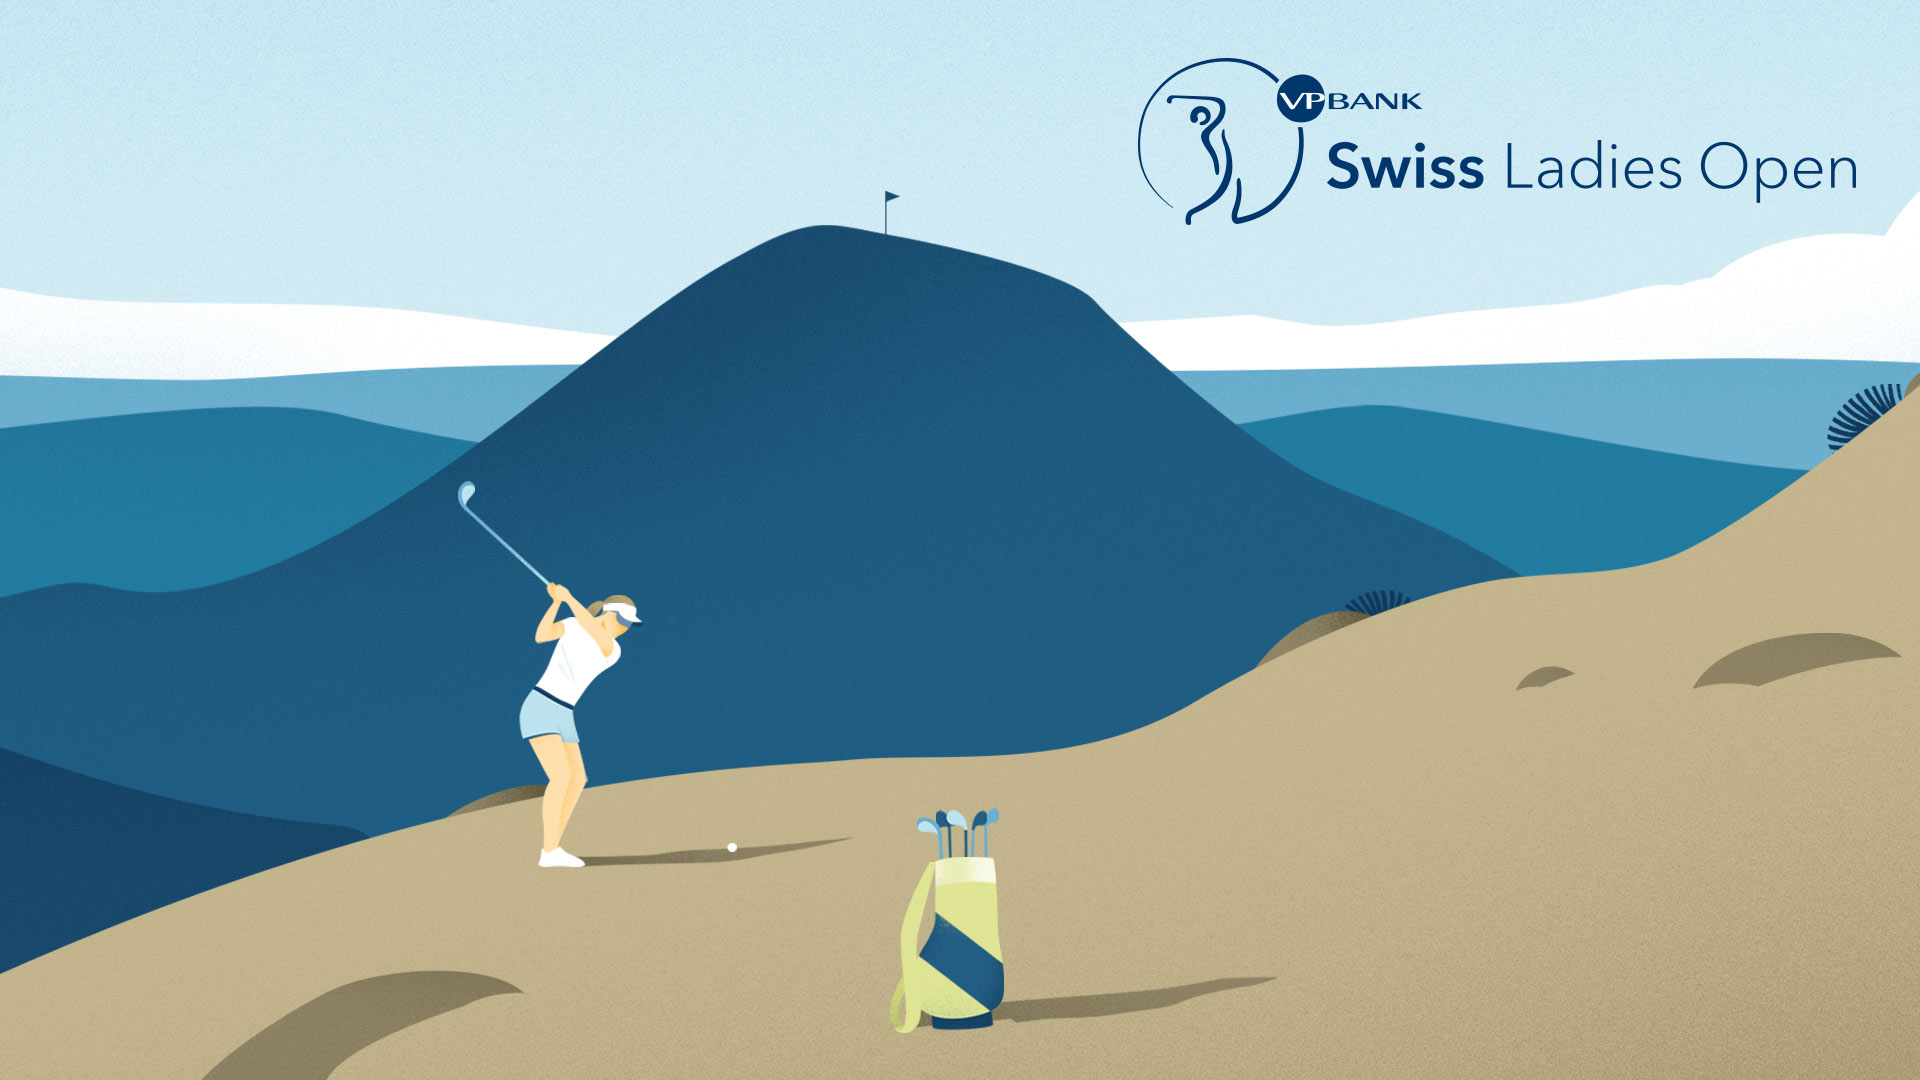 VP Bank Swiss Ladies Open 2020